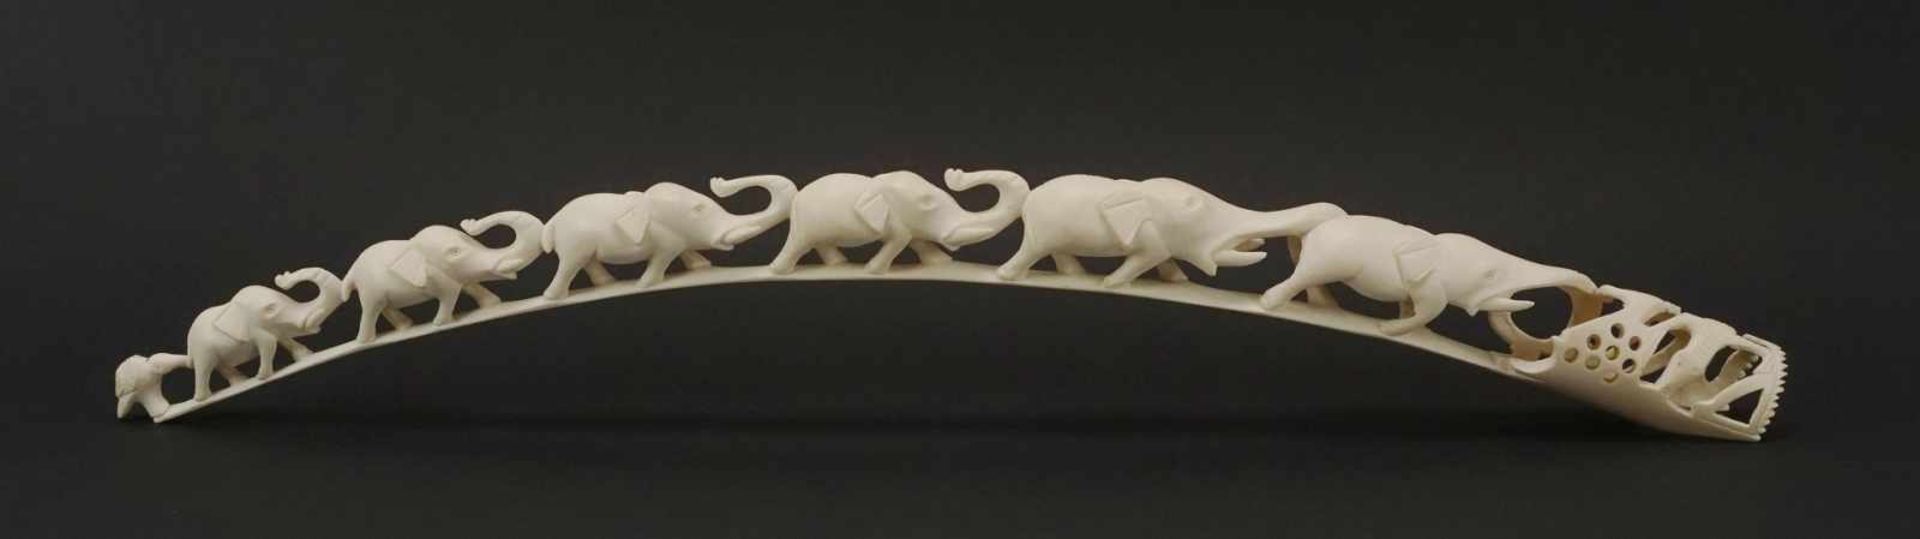 Elfenbeinzahn beschnitzt mit sechs Elefanten, Afrika, um 1920Elfenbein, sechs vollplastische,